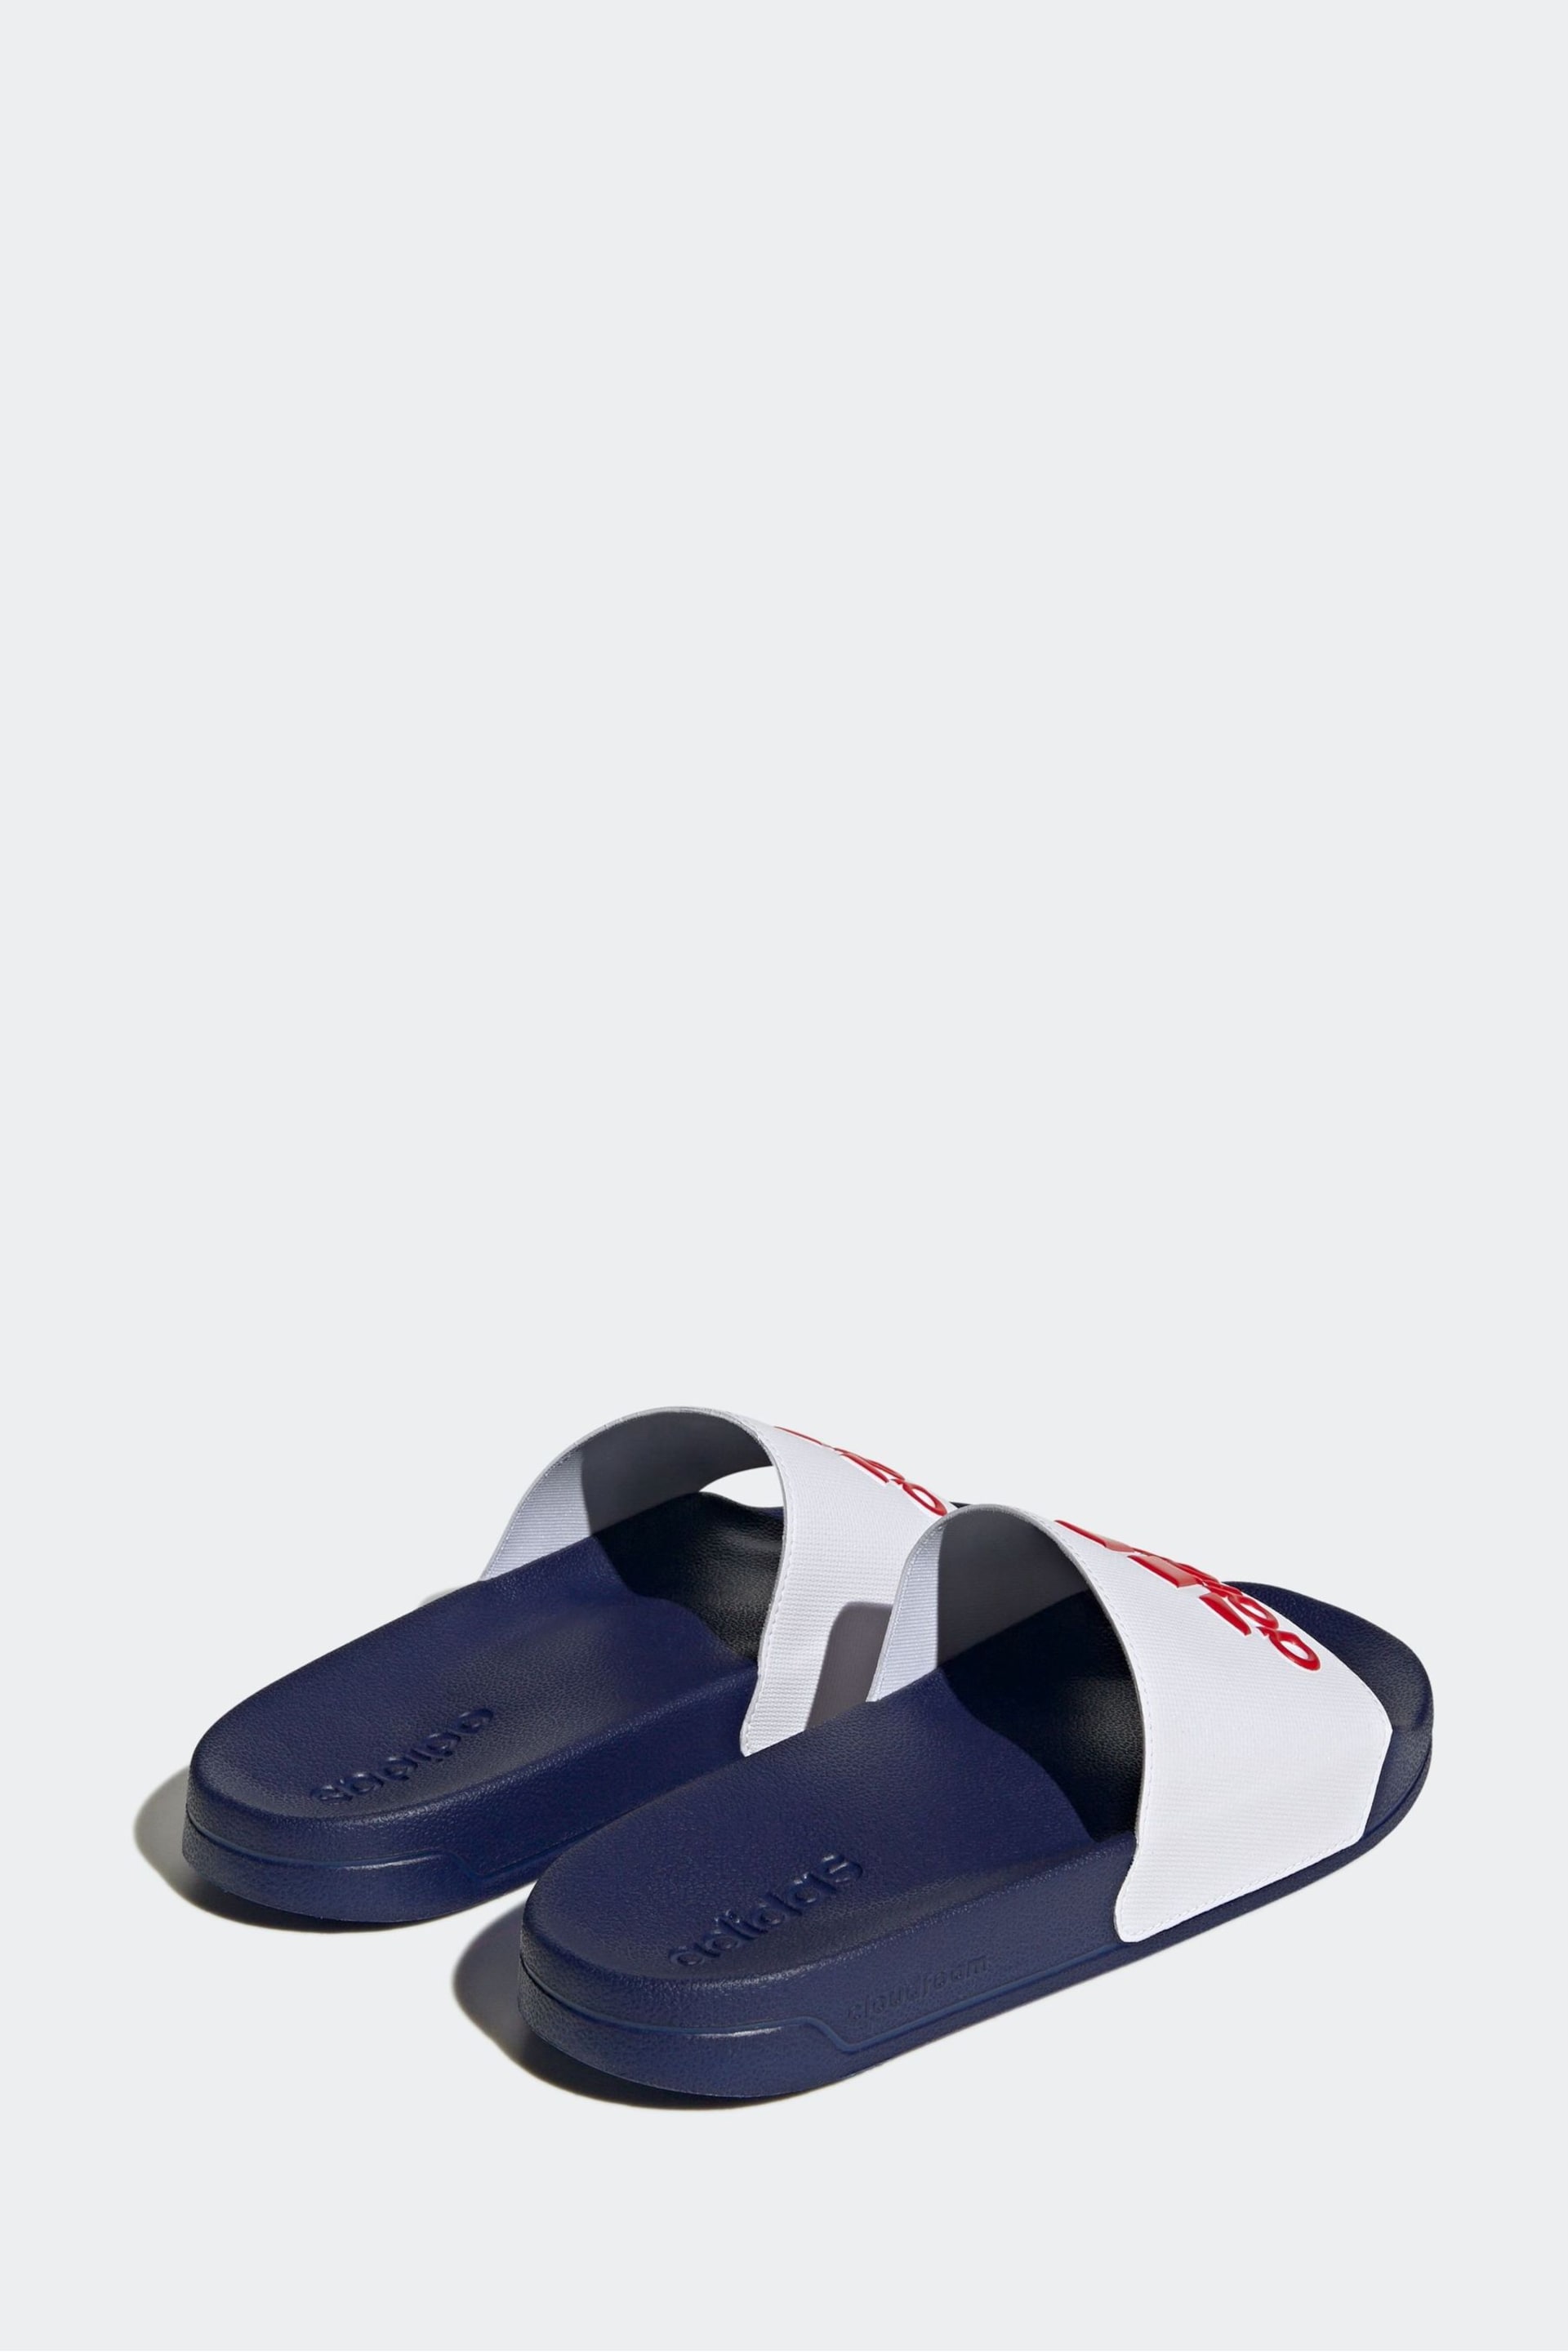 adidas White Sportswear Adilette Shower Slides - Image 3 of 9